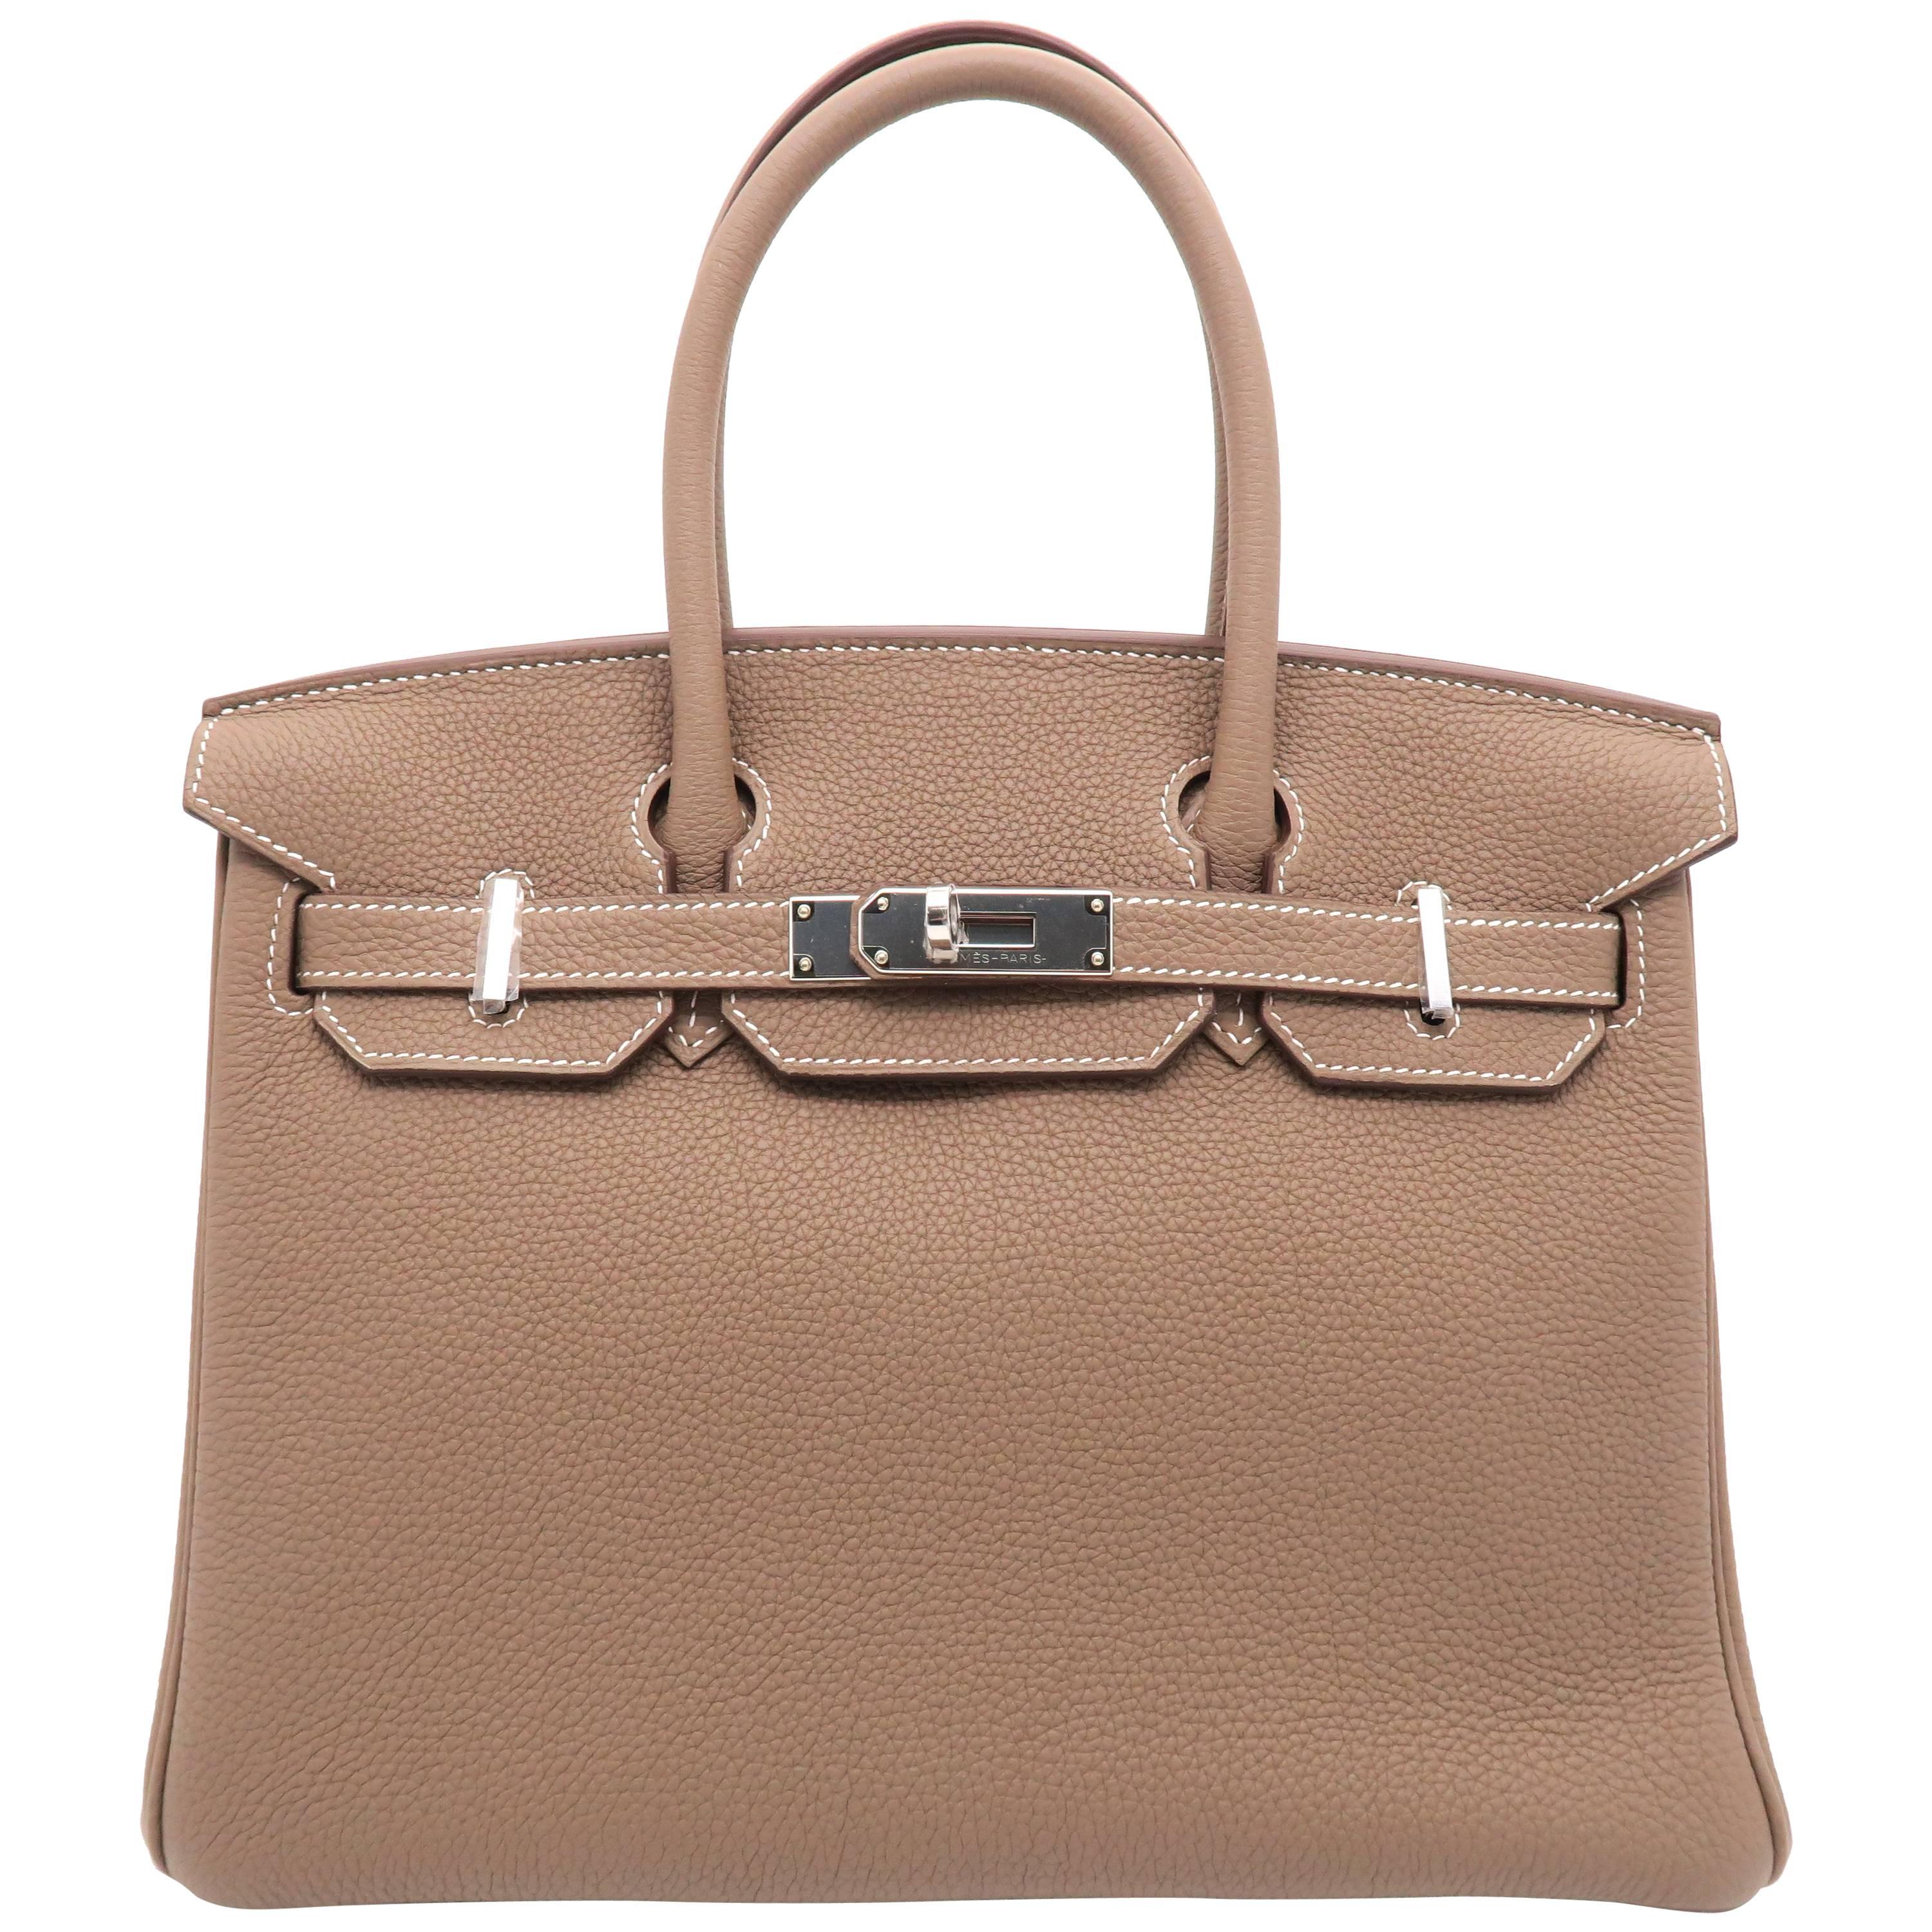 Hermes Birkin 30 Etoupe/Grey Togo Leather SHW Handbag For Sale